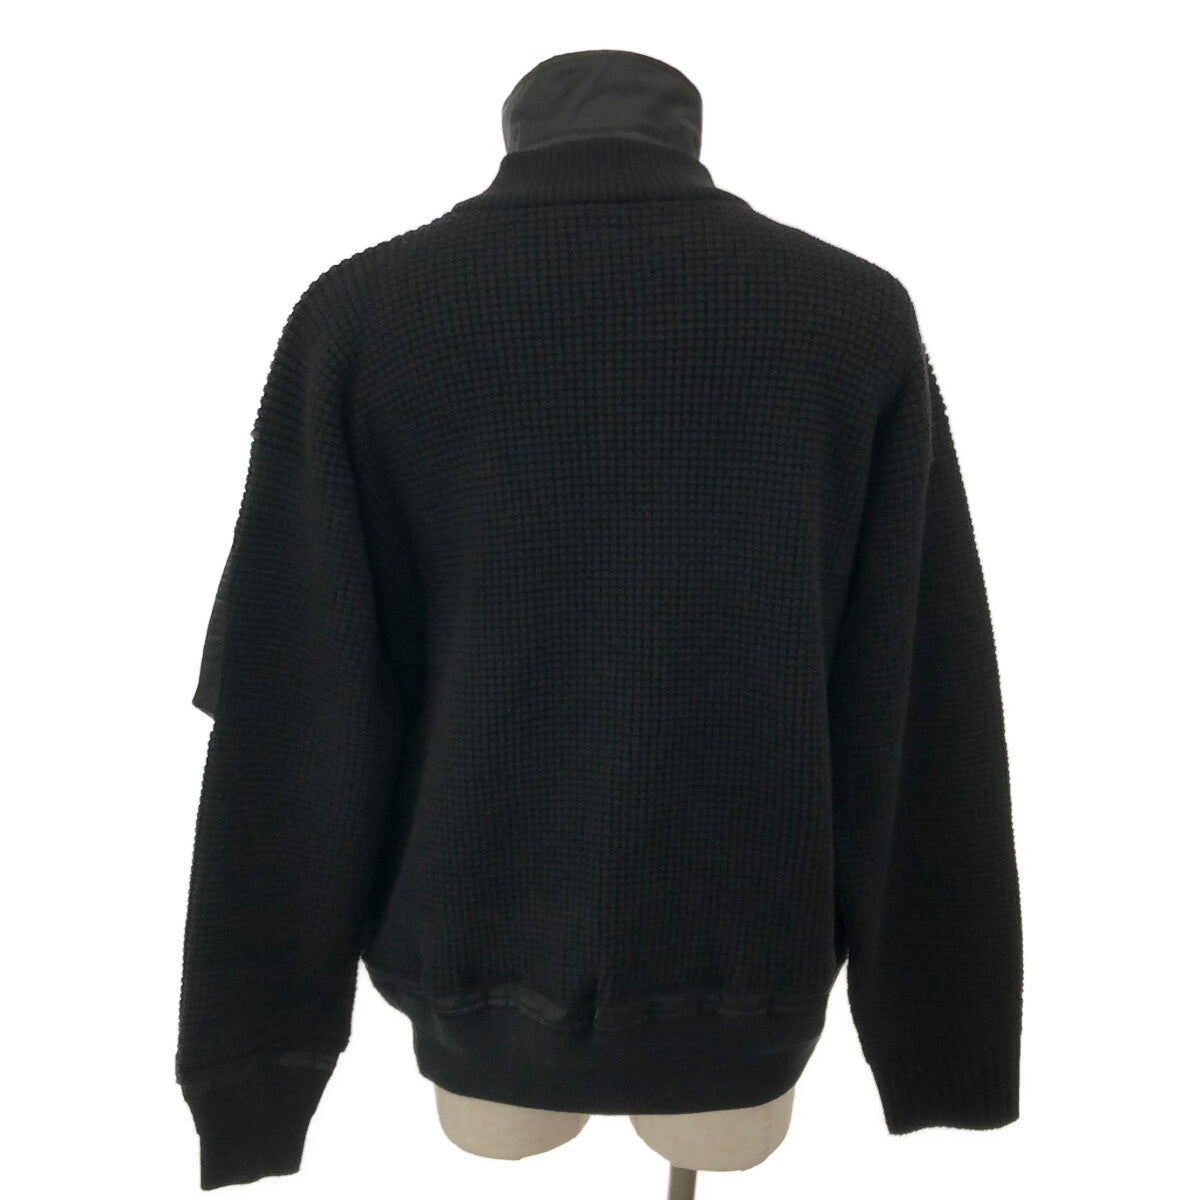 sacai / サカイ | 2021AW | Wool Knit Blouson / 異素材 ドッキング ニット ボンバージャケット | 2 |  ブラック | メンズ